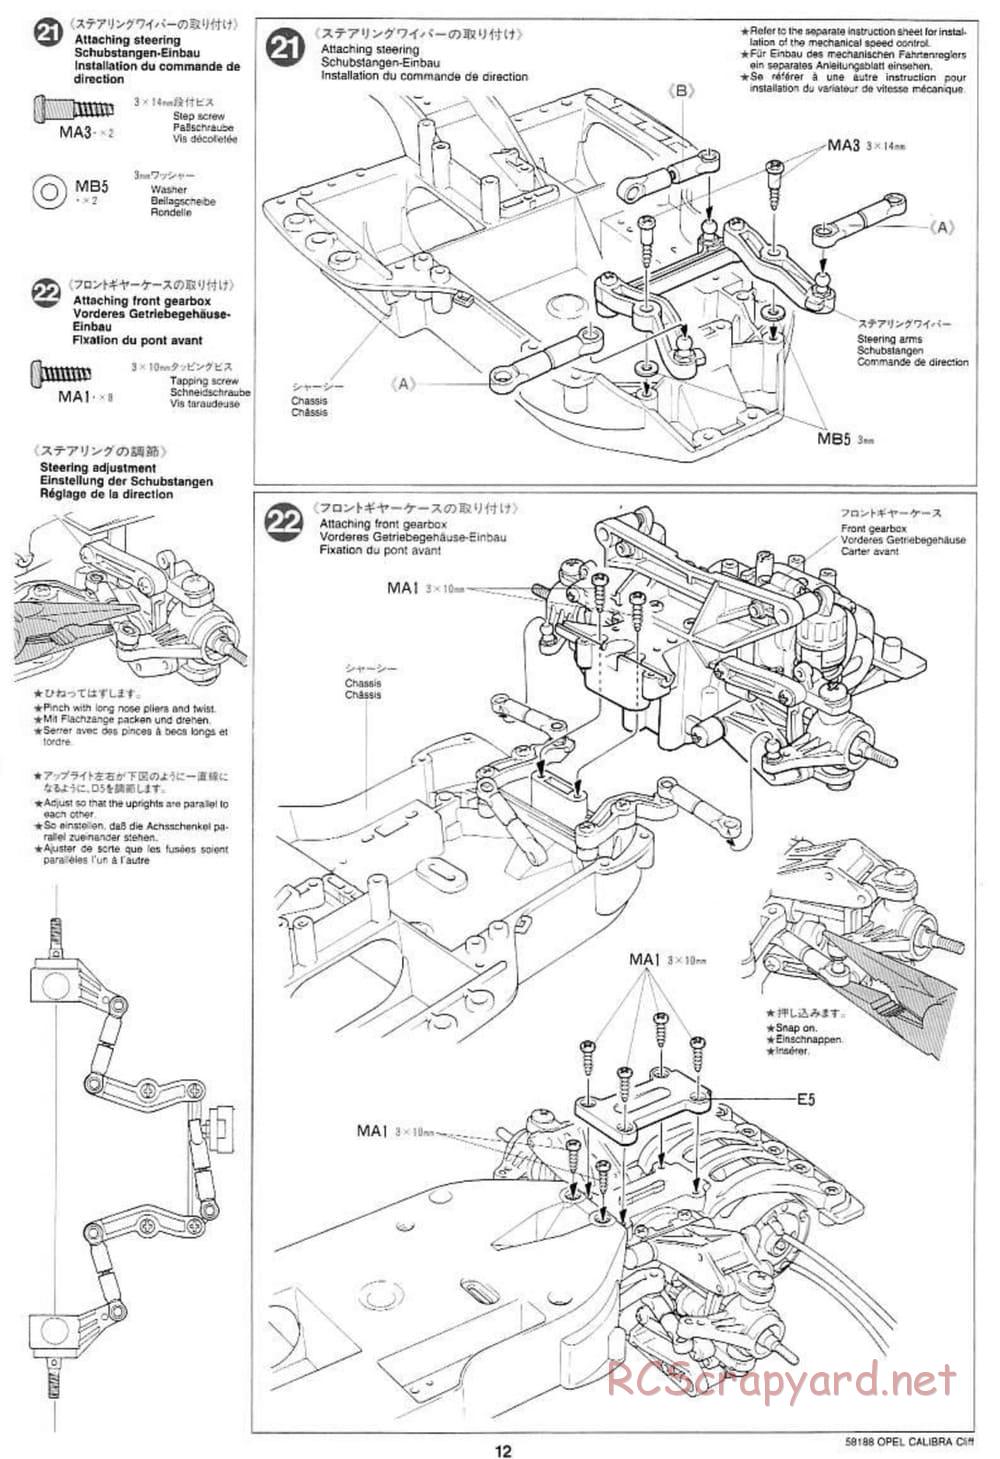 Tamiya - Opel Calibra Cliff - TA-03F Chassis - Manual - Page 12